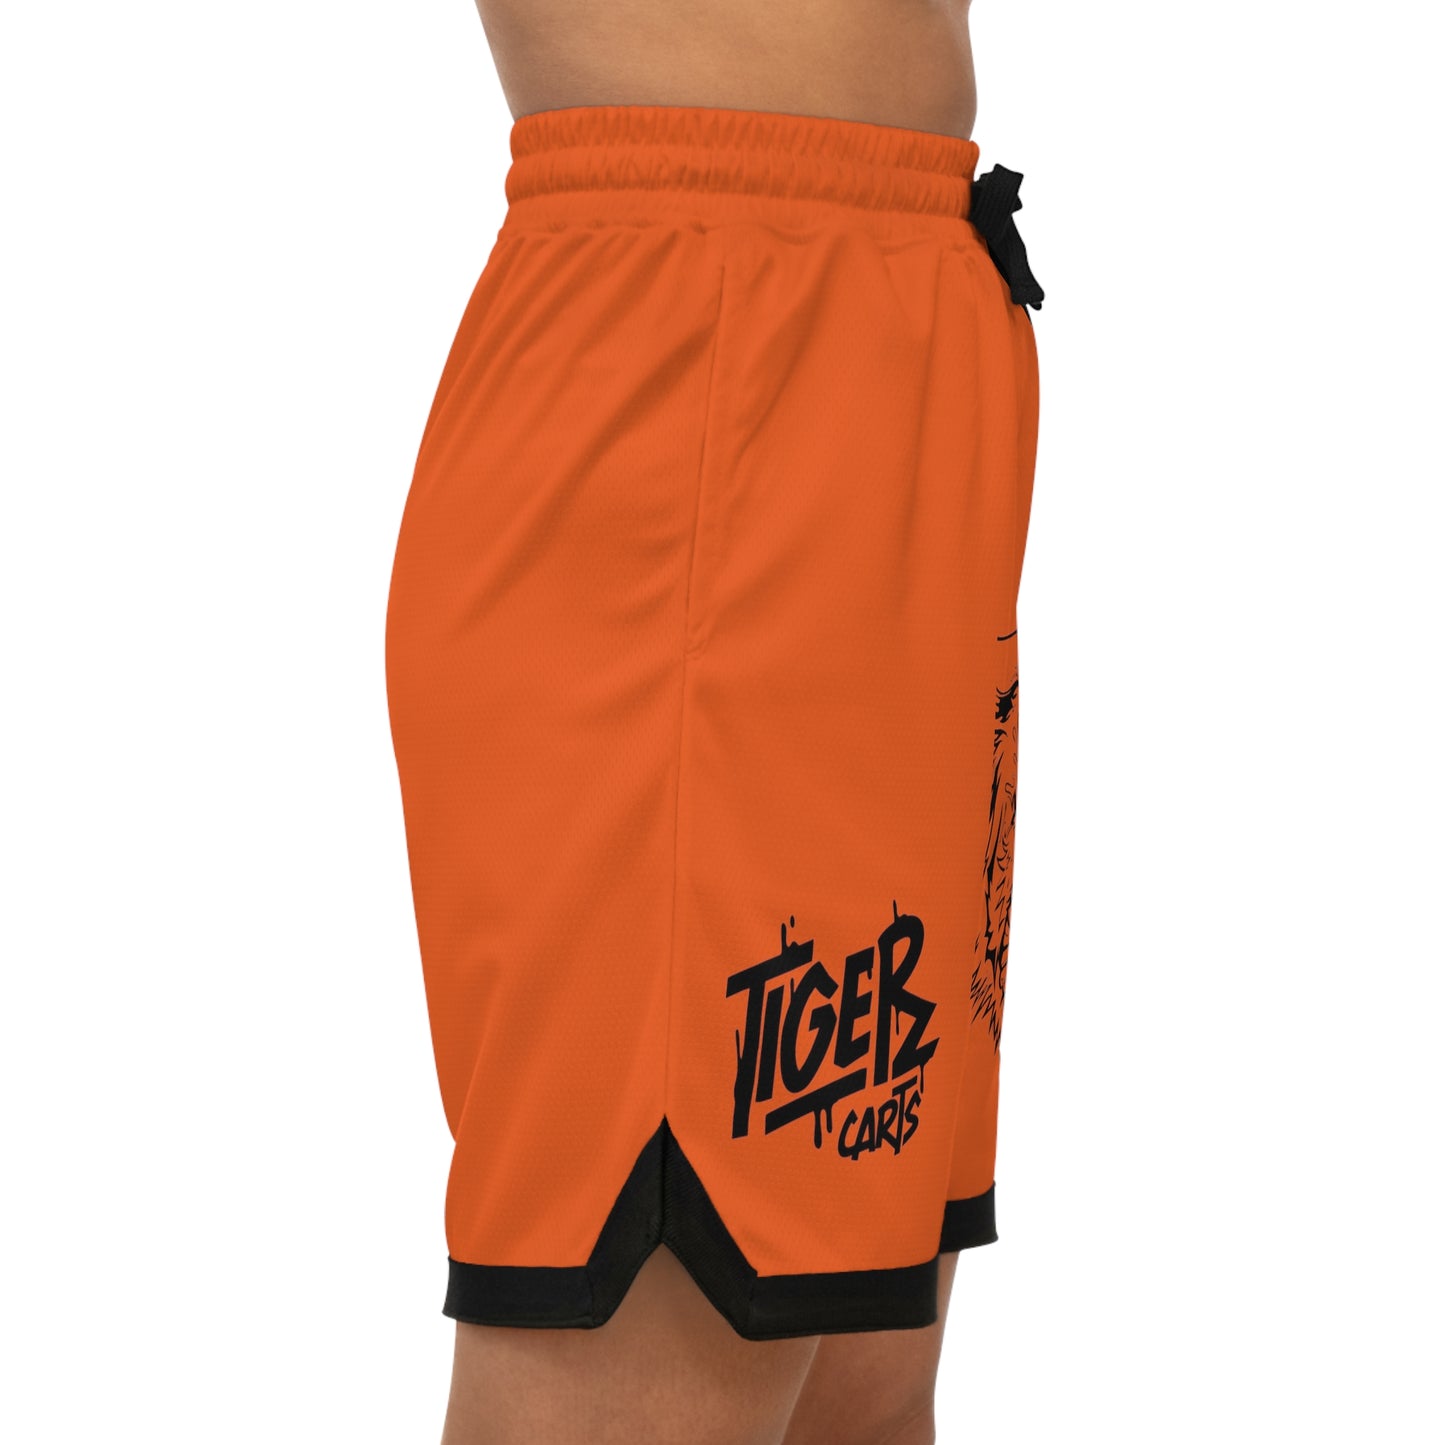 Tiger Carts' Graphic Basketball Shorts